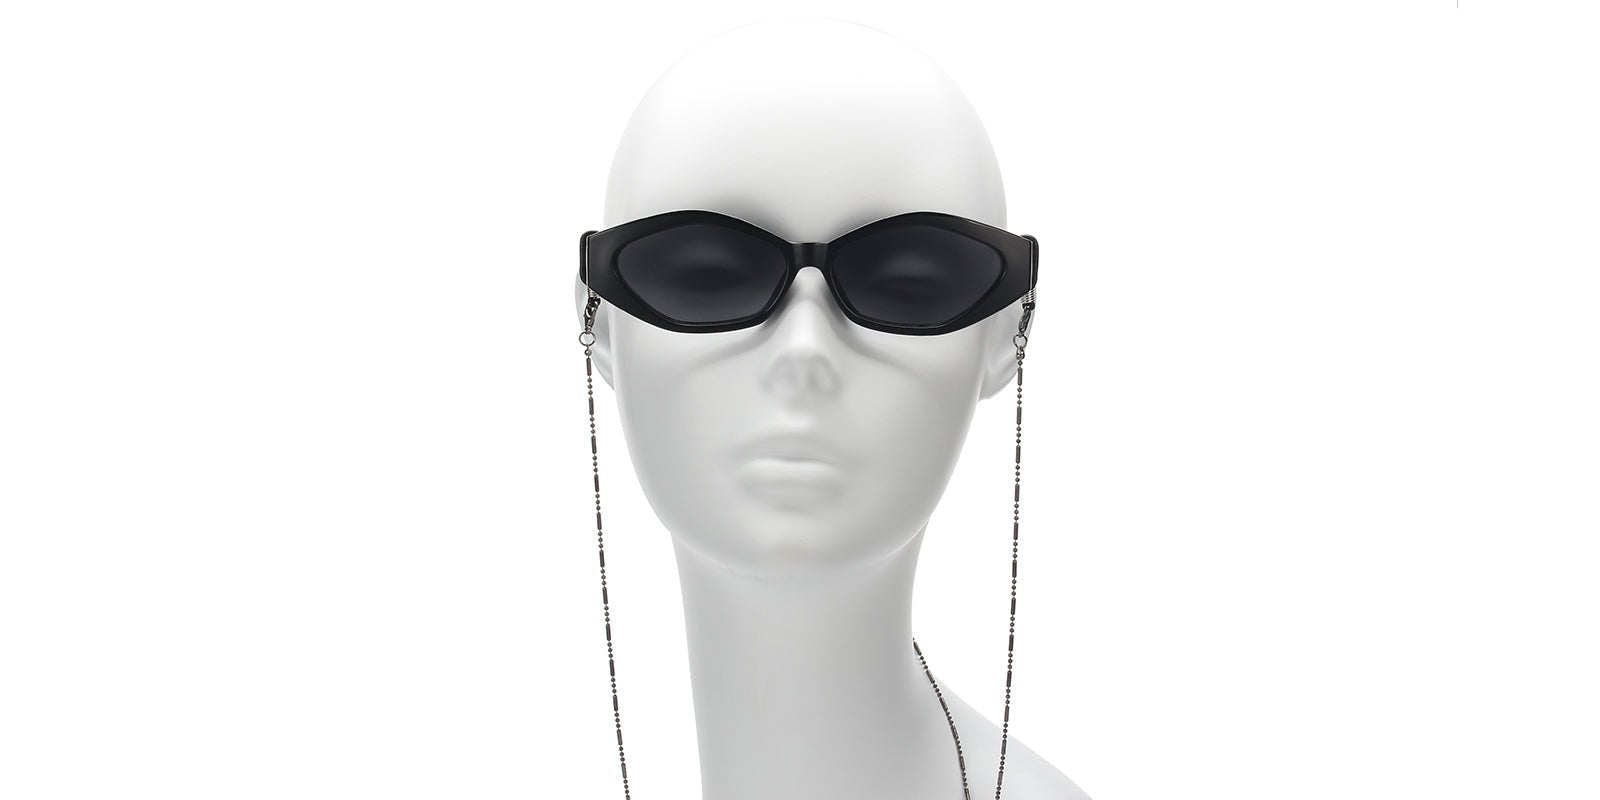 Lurker + Dagger -Non-Polarized Sunglasses For Driving